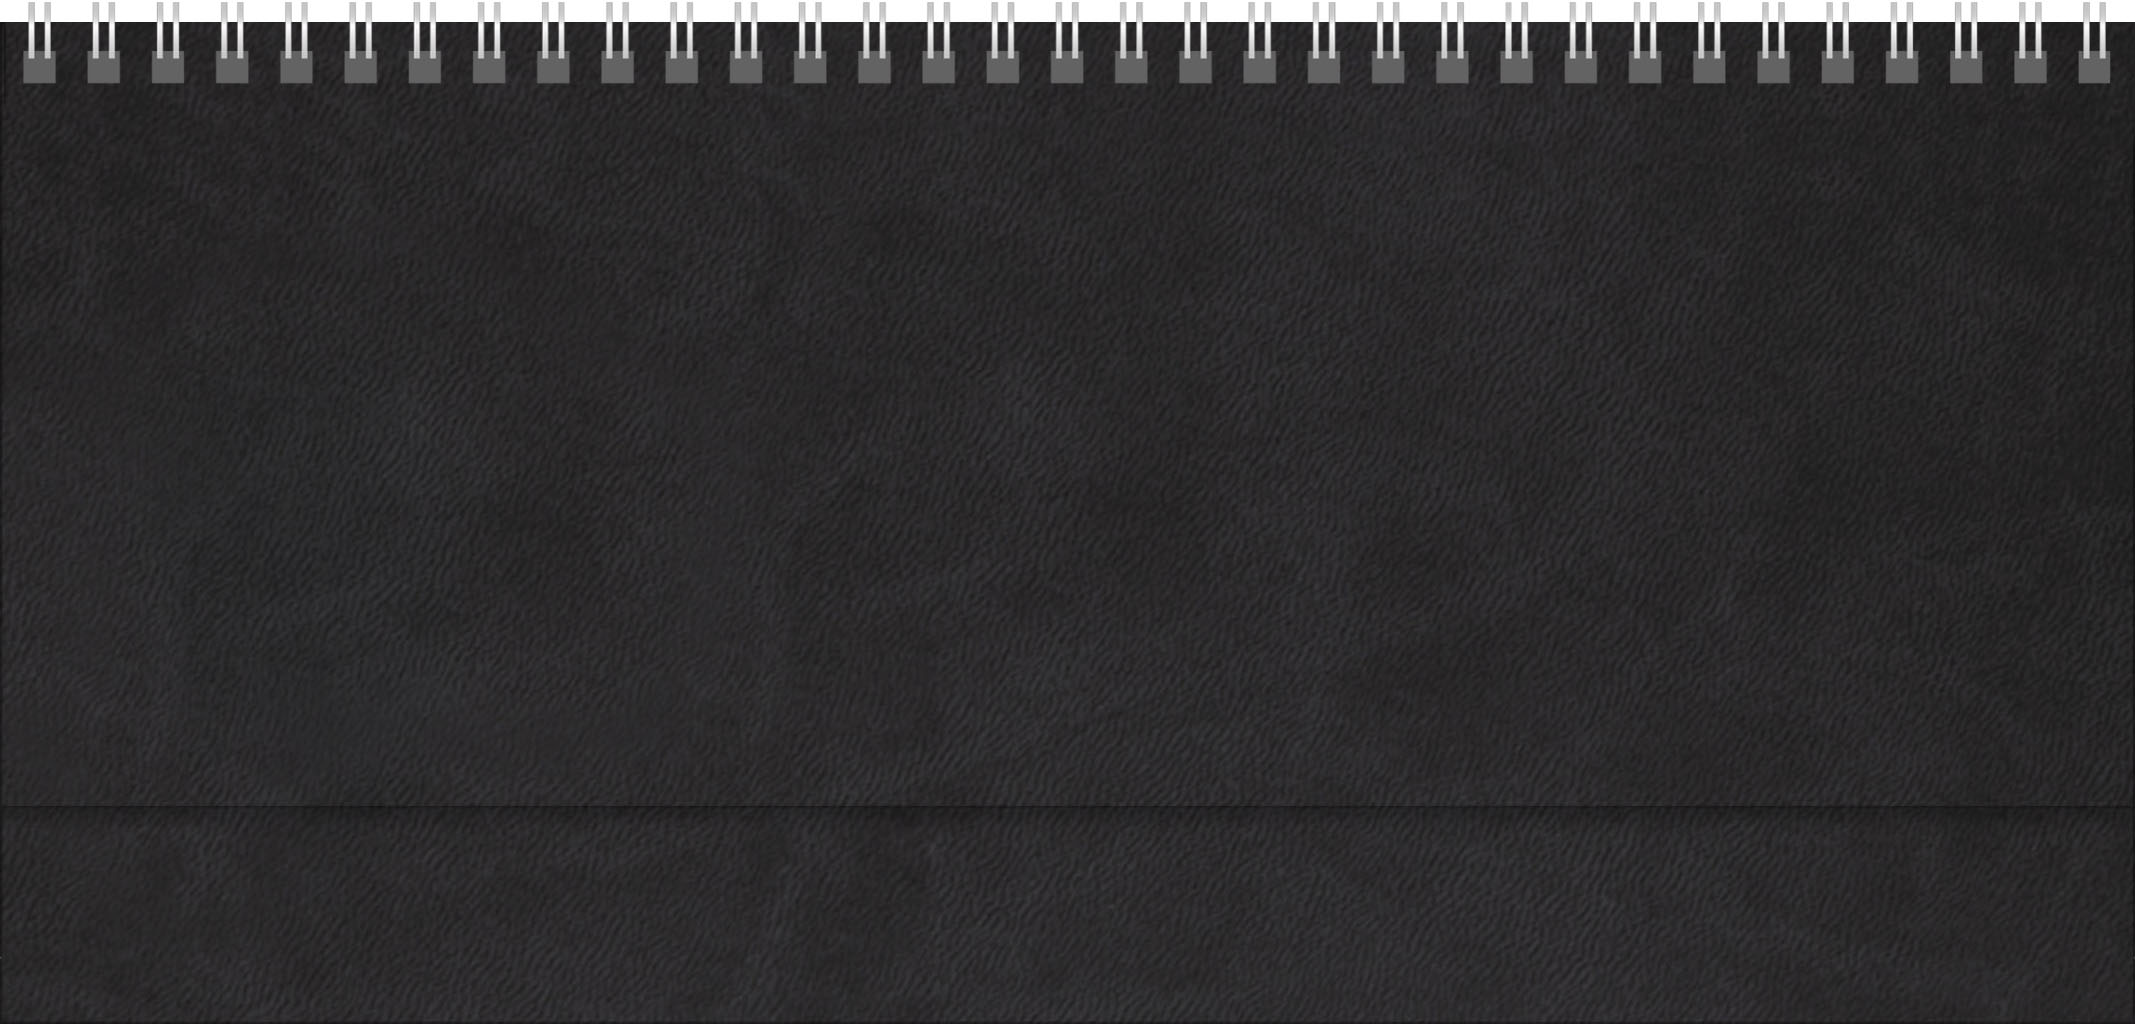 Tischquerkalender Teneriffa
Soft-Touch schwarz
1 Woche / 2 Seiten
4-spr. DE-GB-FR-ES grau/blau
mit Register